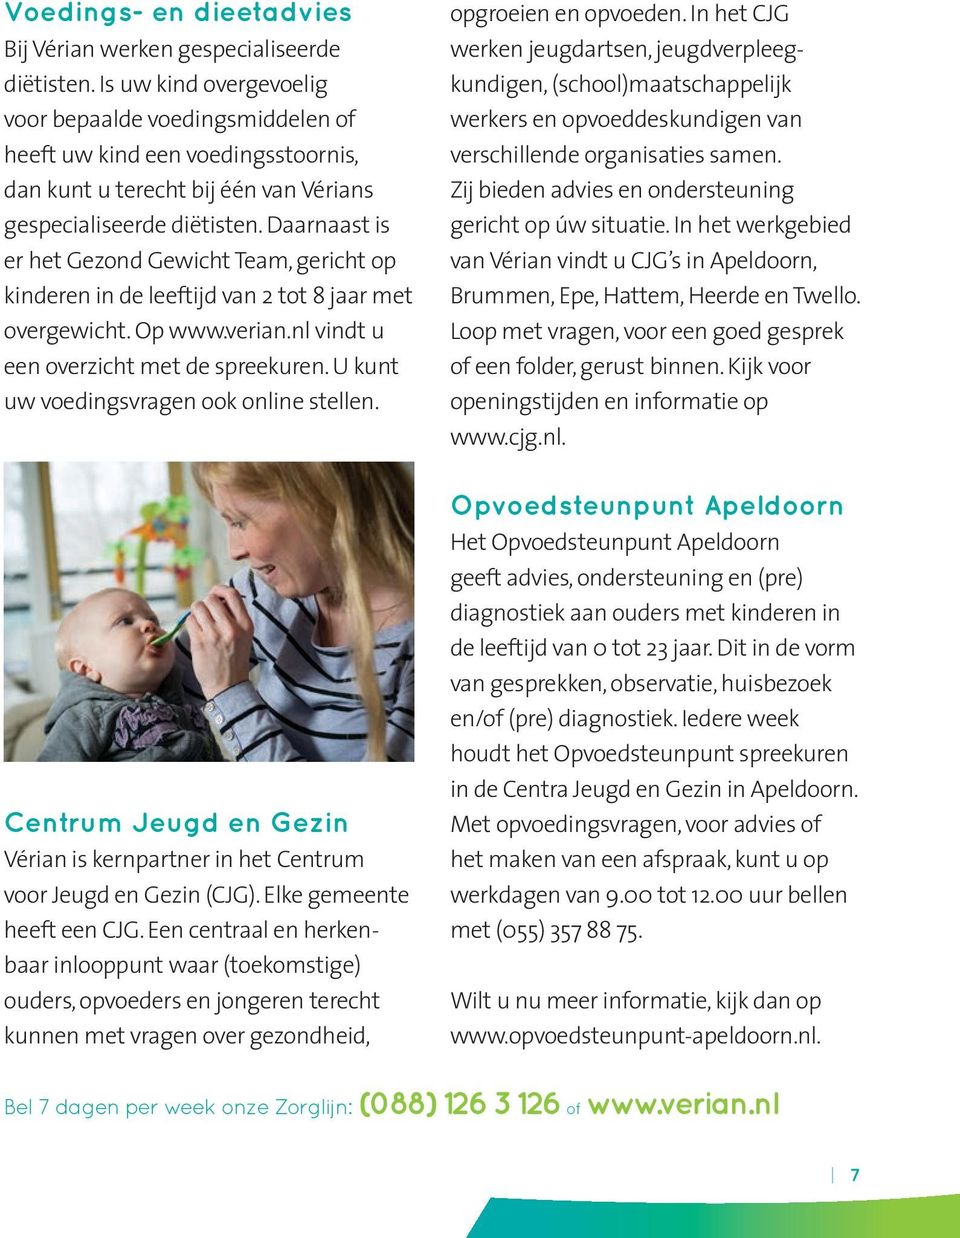 Daarnaast is er het Gezond Gewicht Team, gericht op kinderen in de leeftijd van 2 tot 8 jaar met overgewicht. Op www.verian.nl vindt u een overzicht met de spreekuren.